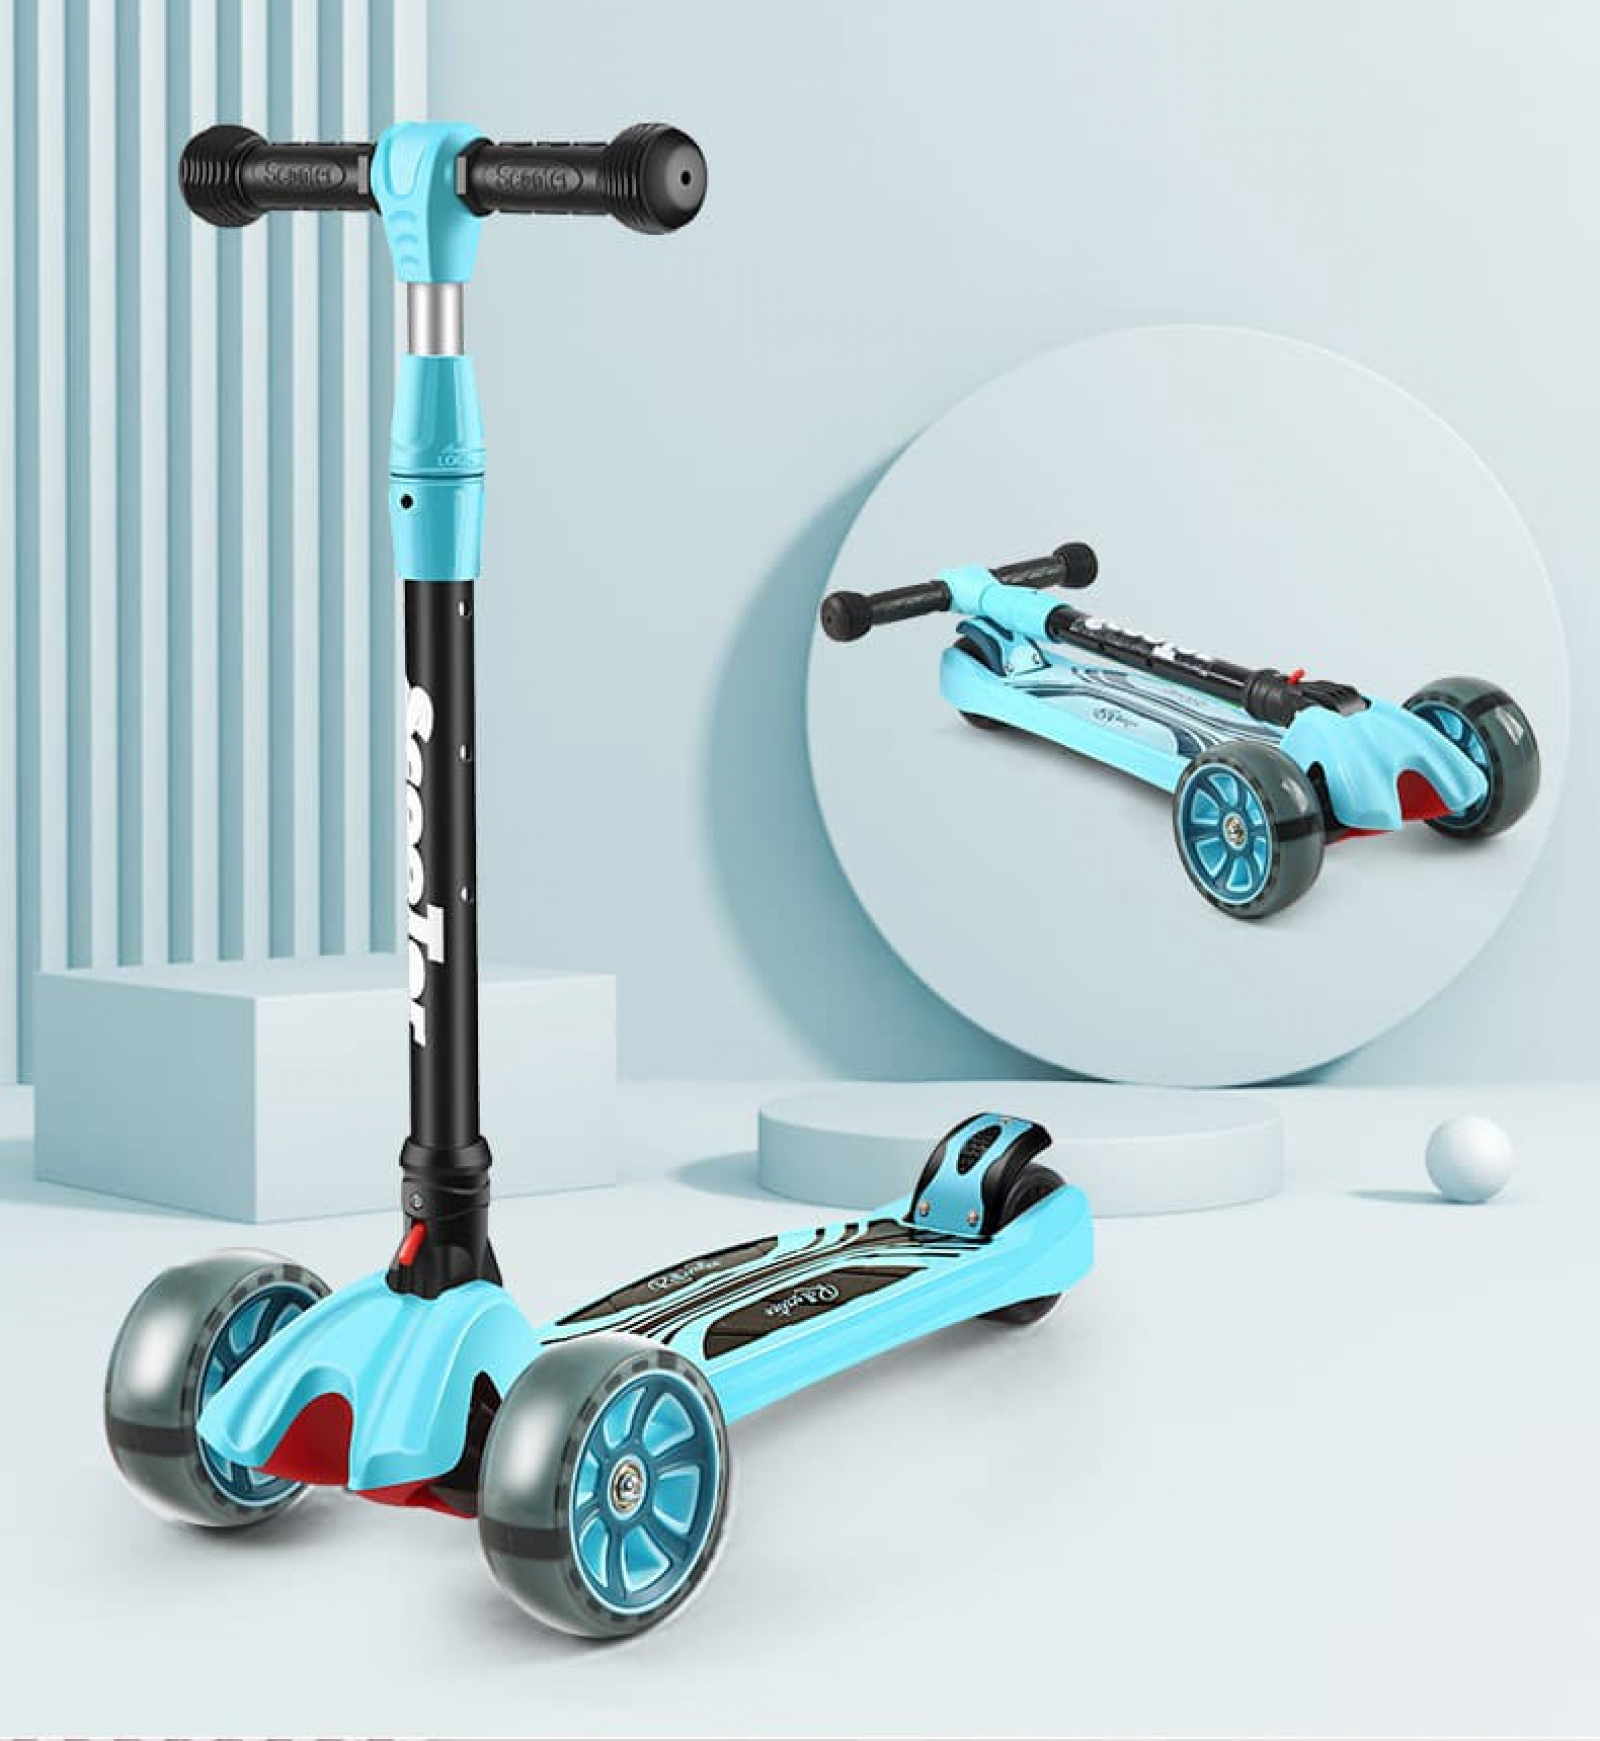 Chúng tôi cung cấp các sản phẩm xe trượt scooter điện 3 bánh giá rẻ nhất tại TPHCM. Đây là sự lựa chọn hoàn hảo cho các bạn trẻ muốn tận hưởng cảm giác thú vị khi di chuyển trên phố.